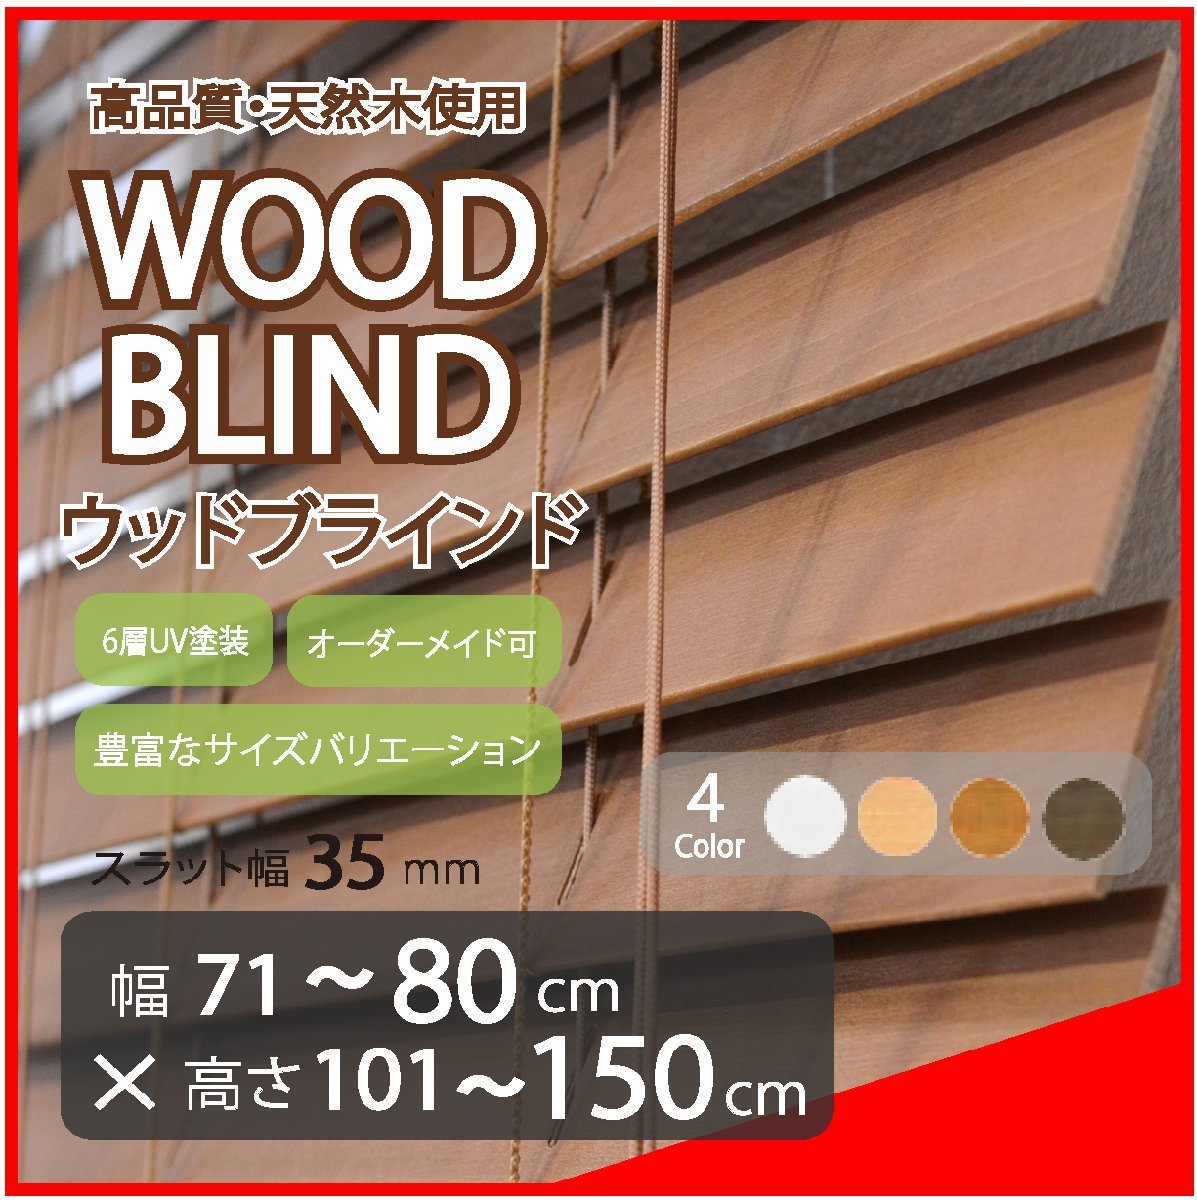 窓枠に合わせてサイズ加工が可能 高品質 木製 ウッド ブラインド オーダー可 スラット(羽根)幅35mm 幅71～80cm×高さ101～150cm